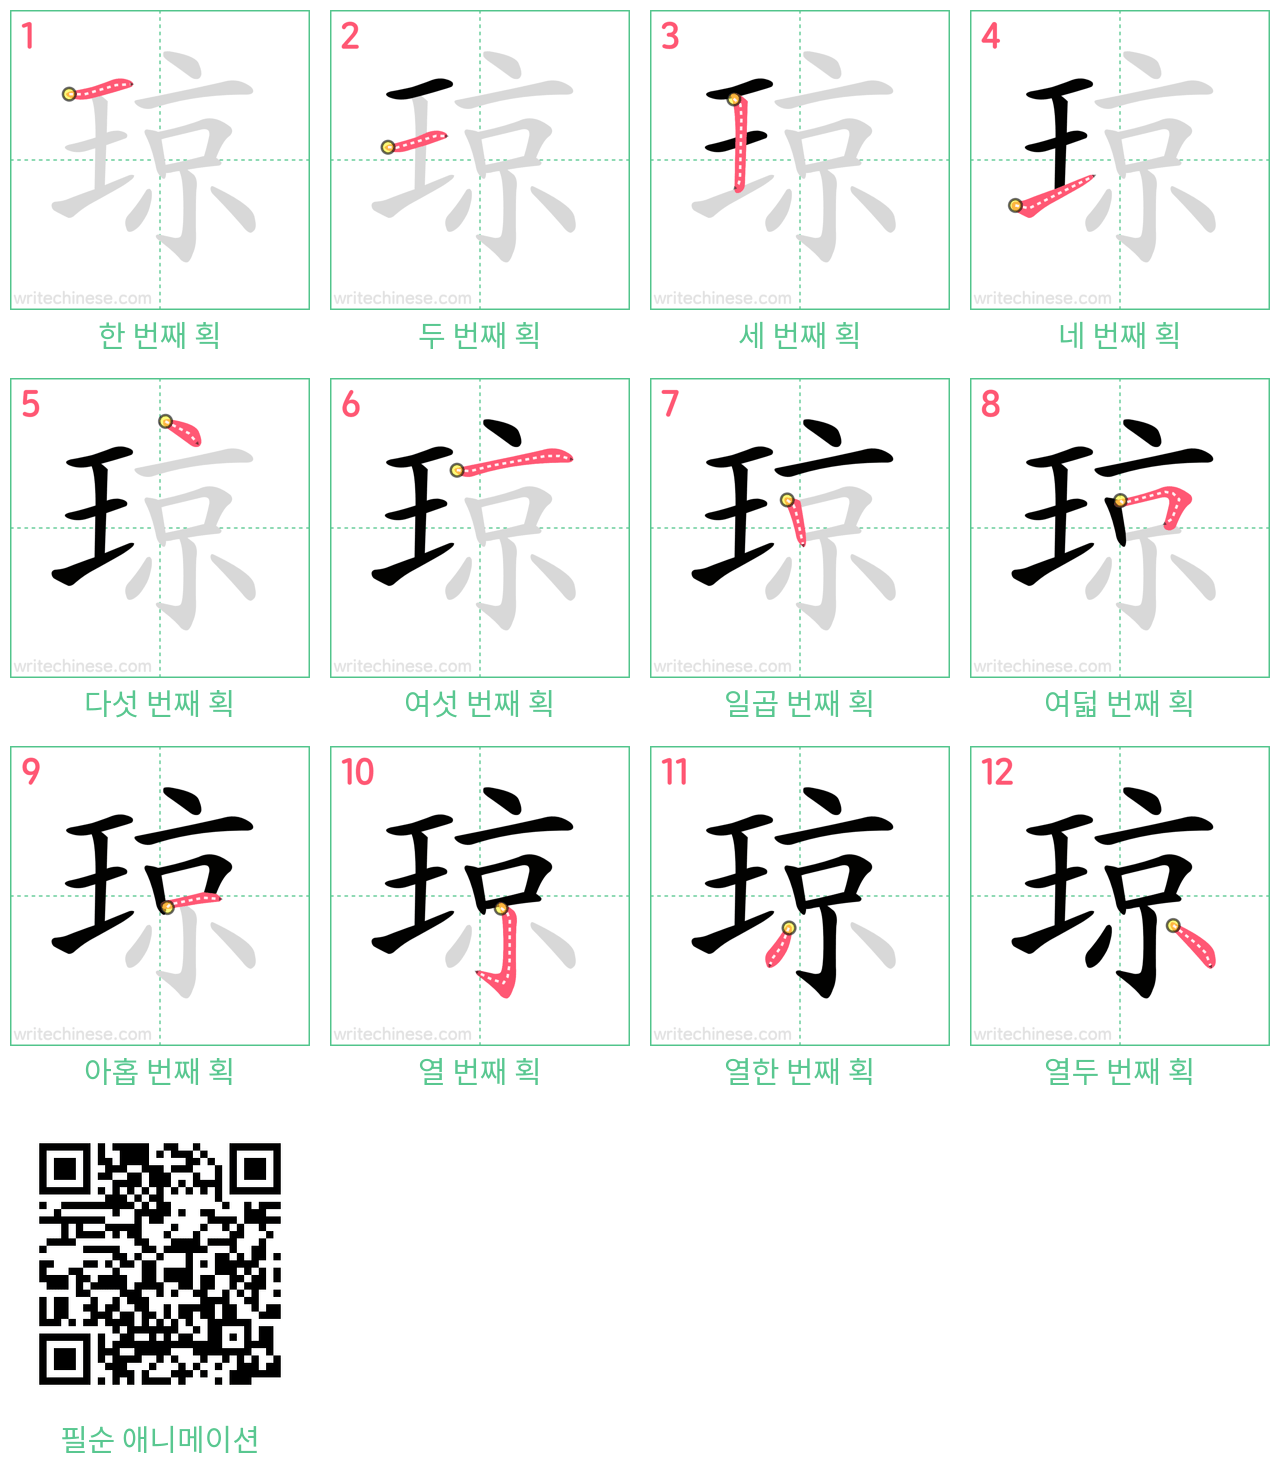 琼 step-by-step stroke order diagrams